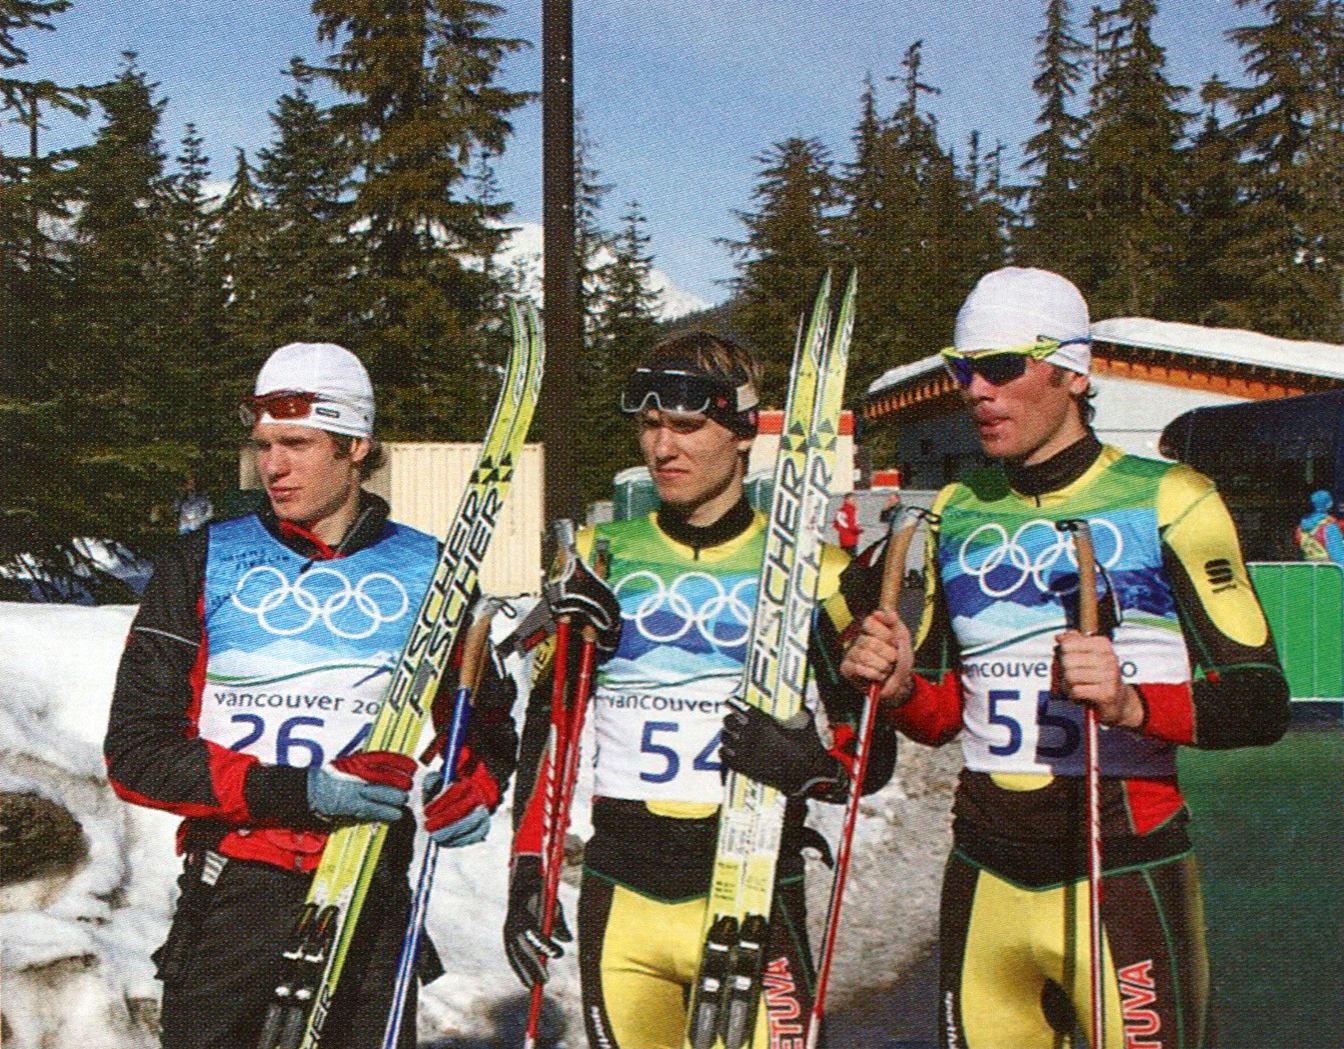 Lietuvos slidininkai (iš kairės) M. Strolia, M. Vaičiulis ir A. Novoselskis 2010 Vankuverio žiemos olimpinėse